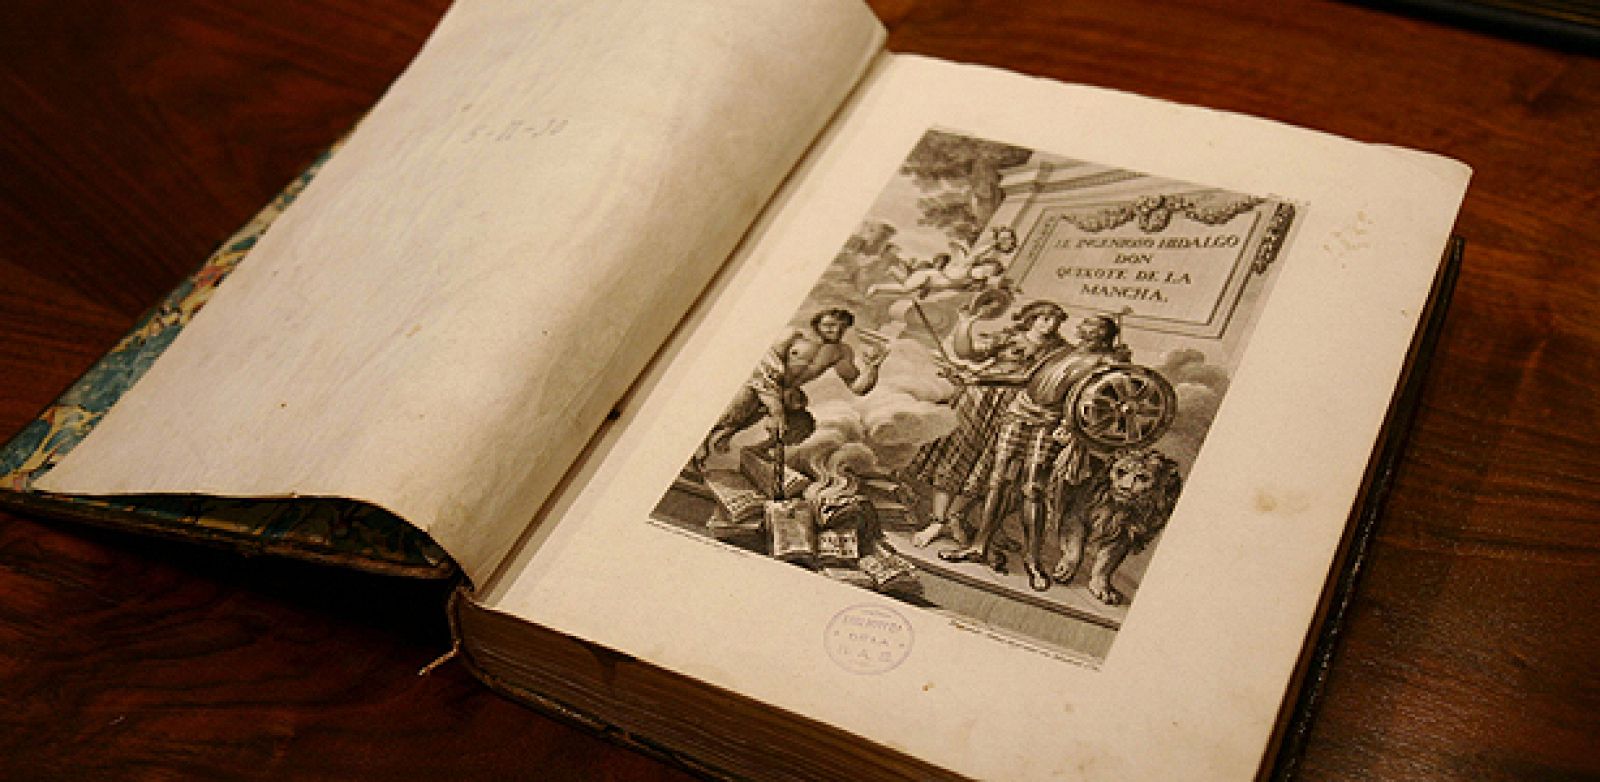 La edición ilustrada del Quijote de Ibarra, de 1780